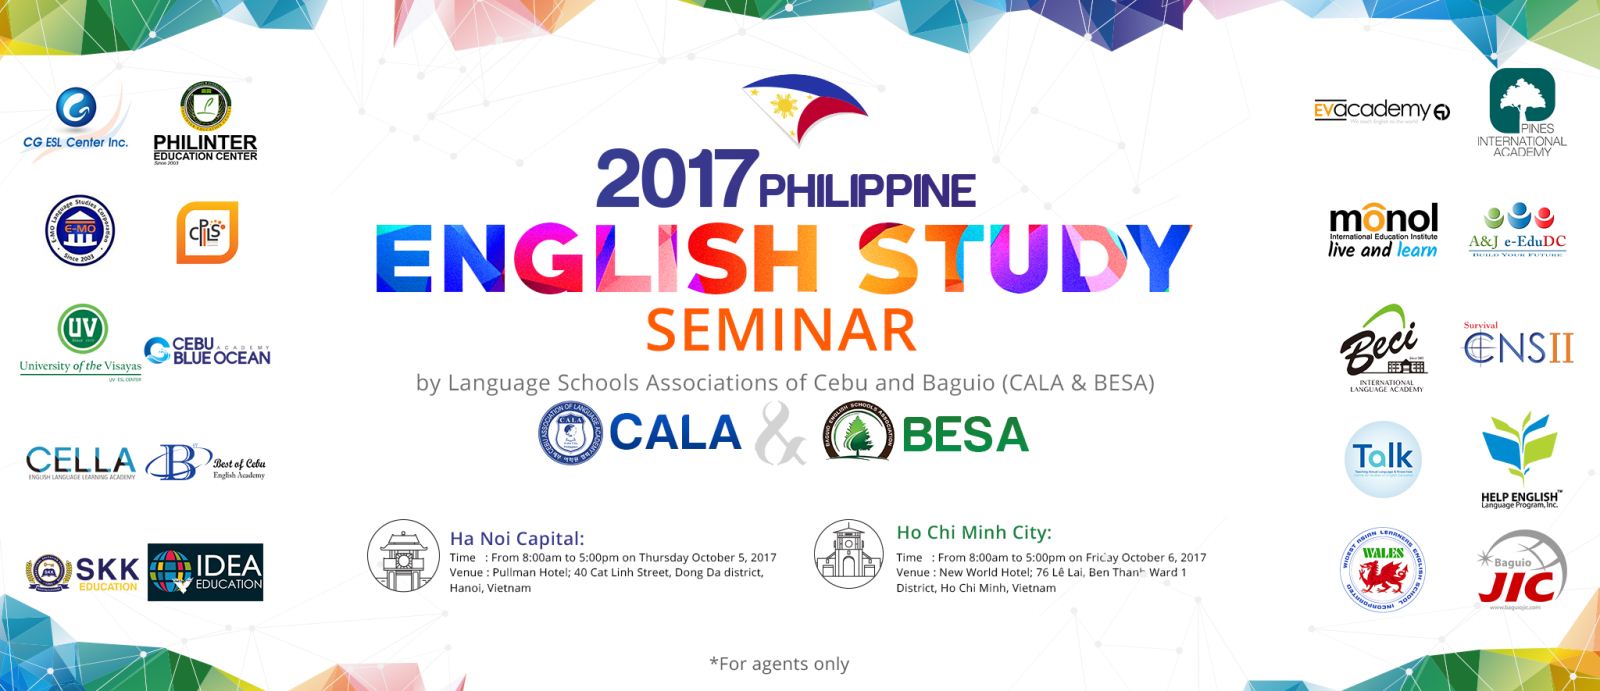 Hiệp hội Besa và Cala phối hợp tổ chức hội thảo du học Philippines tại Việt Nam tháng 10/2017